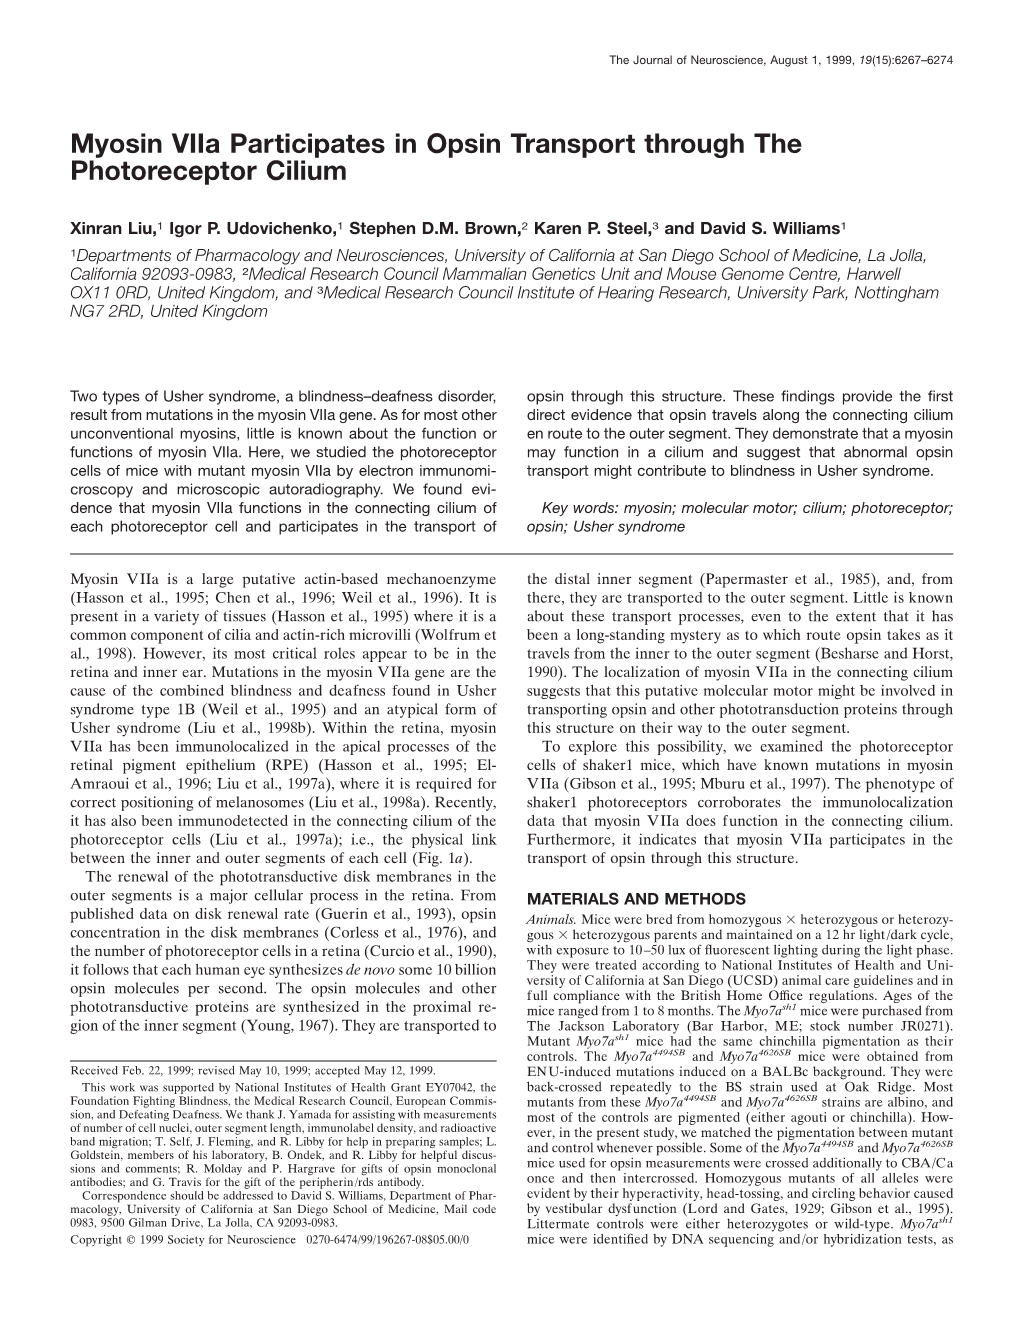 Myosin Viia Participates in Opsin Transport Through the Photoreceptor Cilium